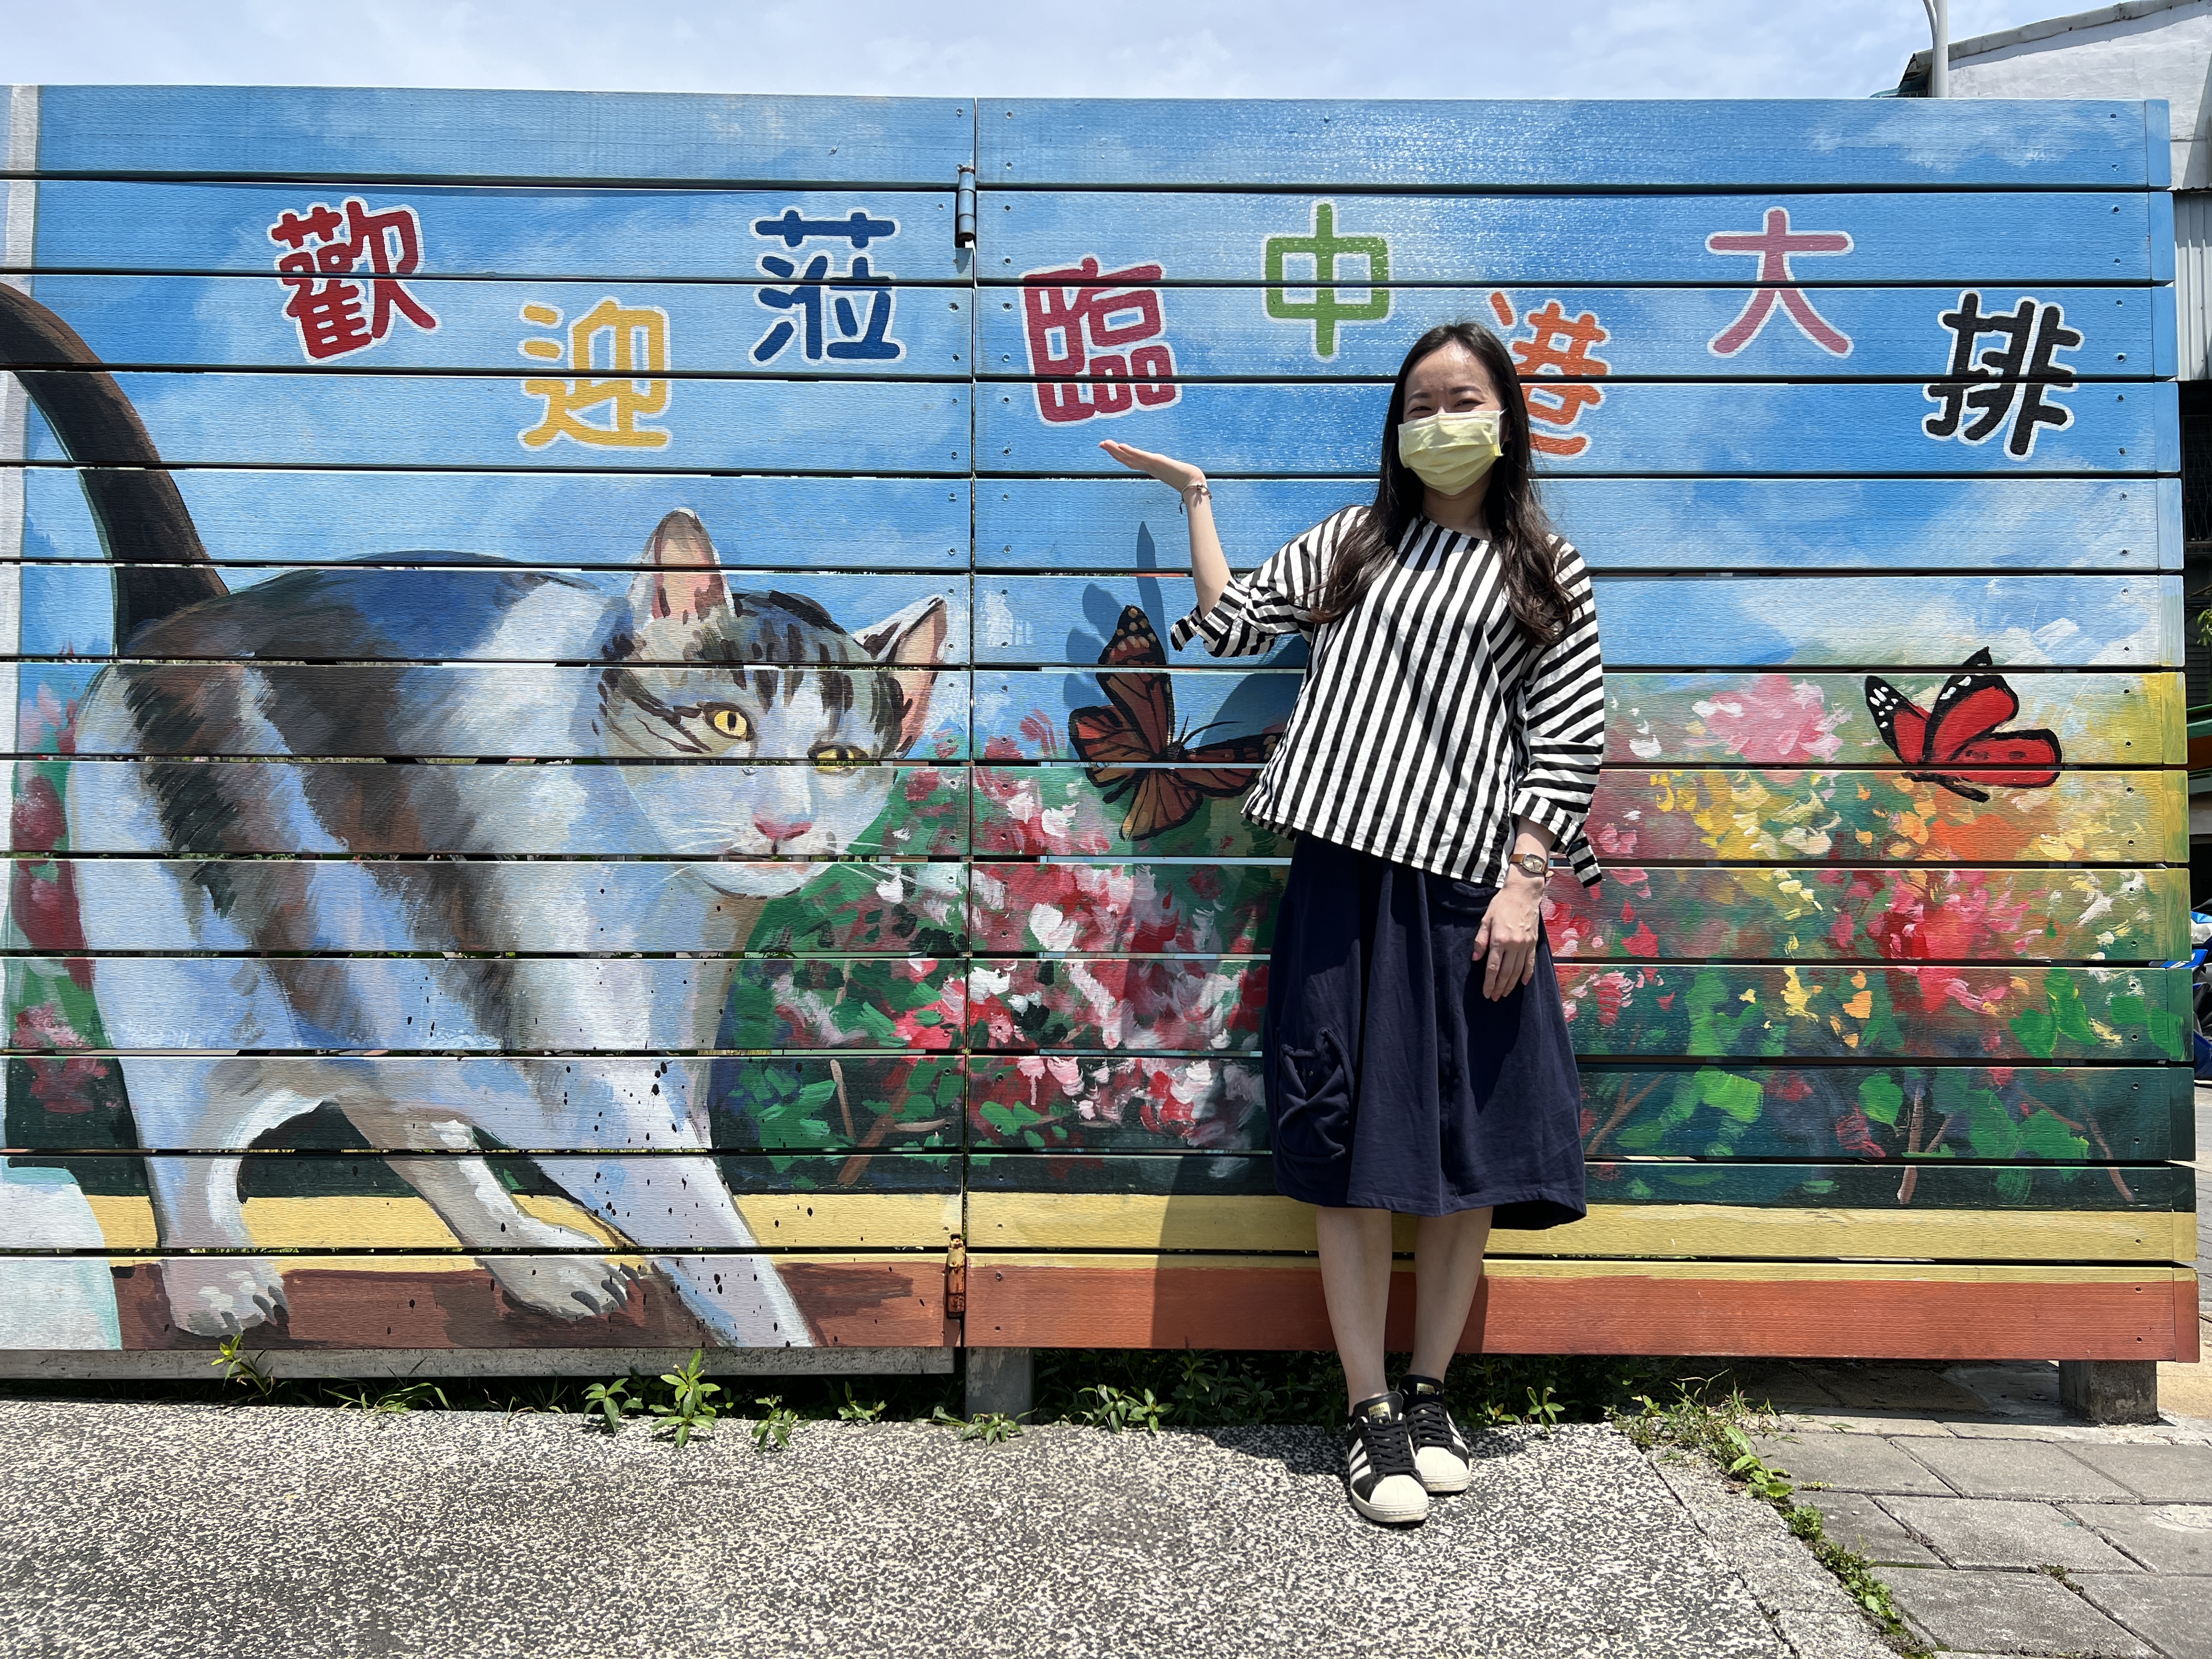 中港大排彩繪牆拍照打卡